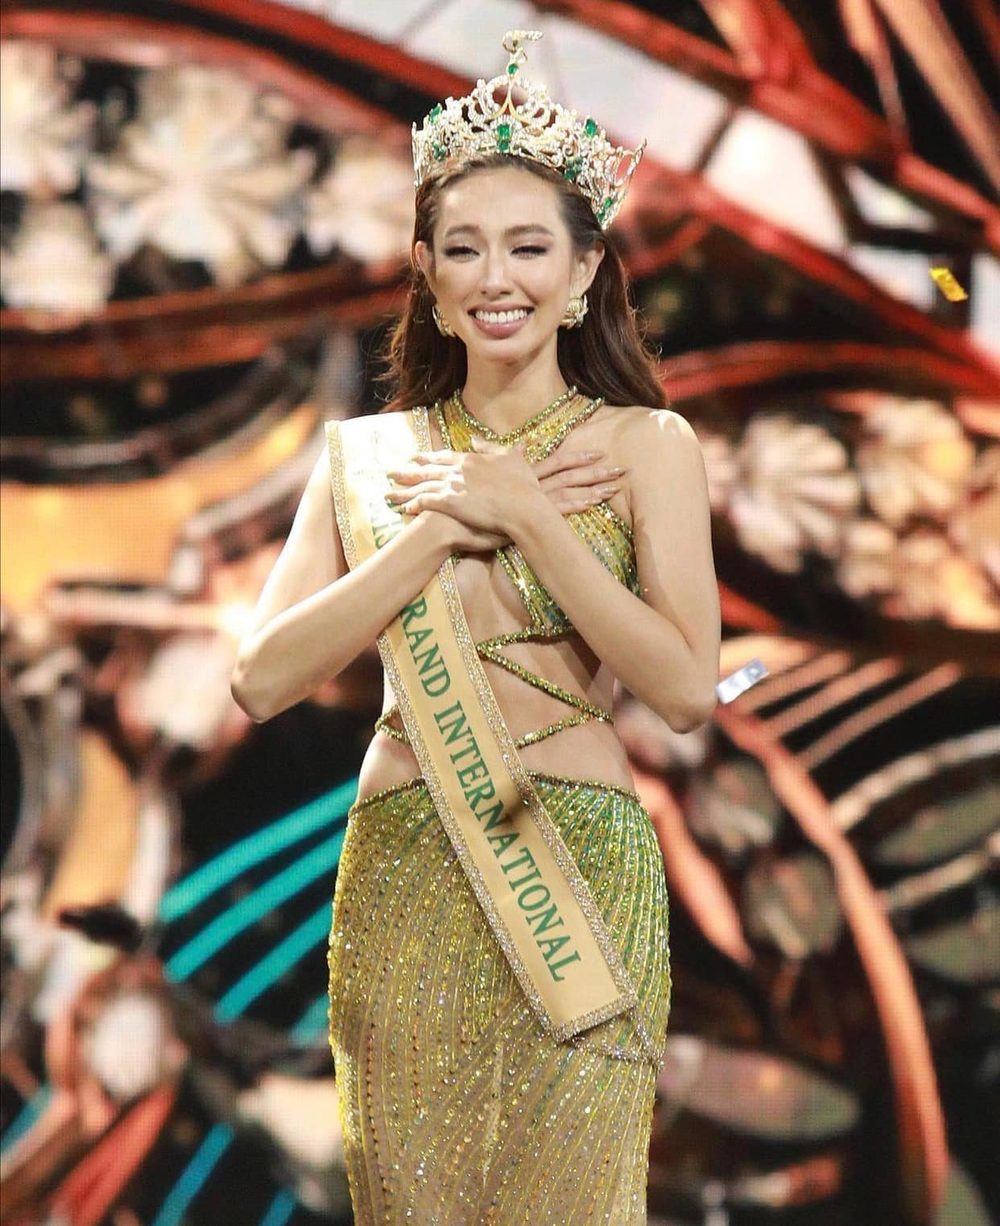  
Thùy Tiên mang về chiếc vương miện Miss Grand International đầu tiên cho Việt Nam. (Ảnh: Facebook World Press)